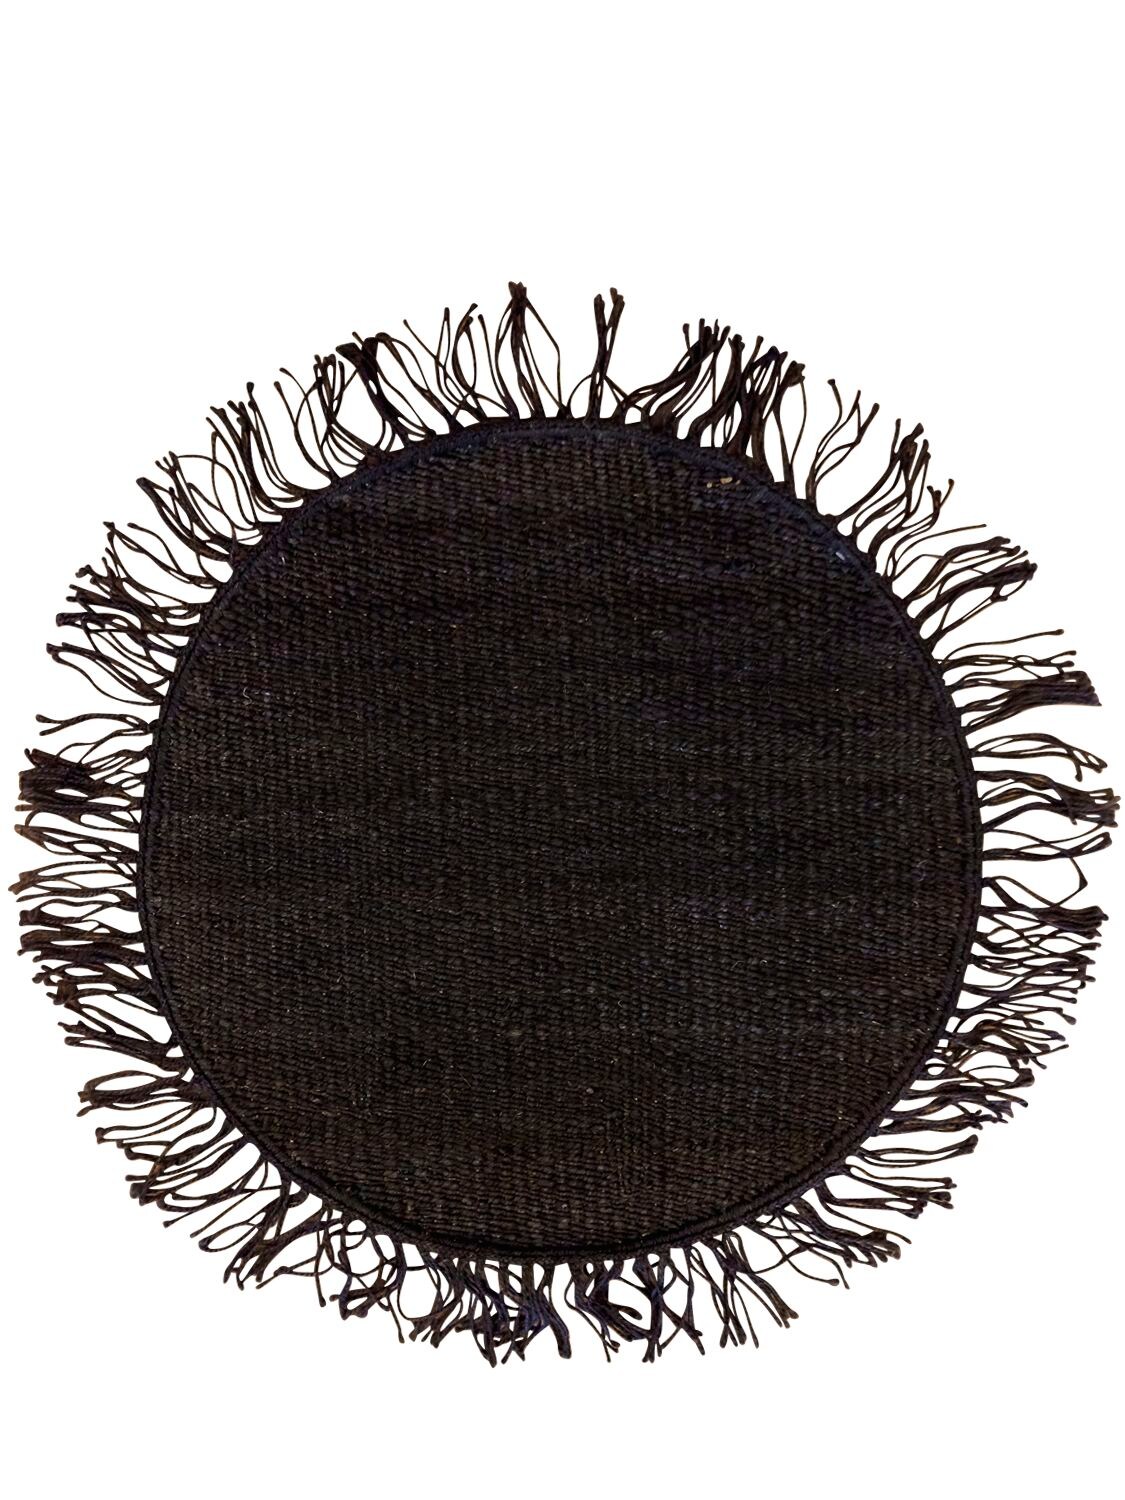 Studio Maleki Cocco Round Handmade Jute Rug W/ Fringes In Black